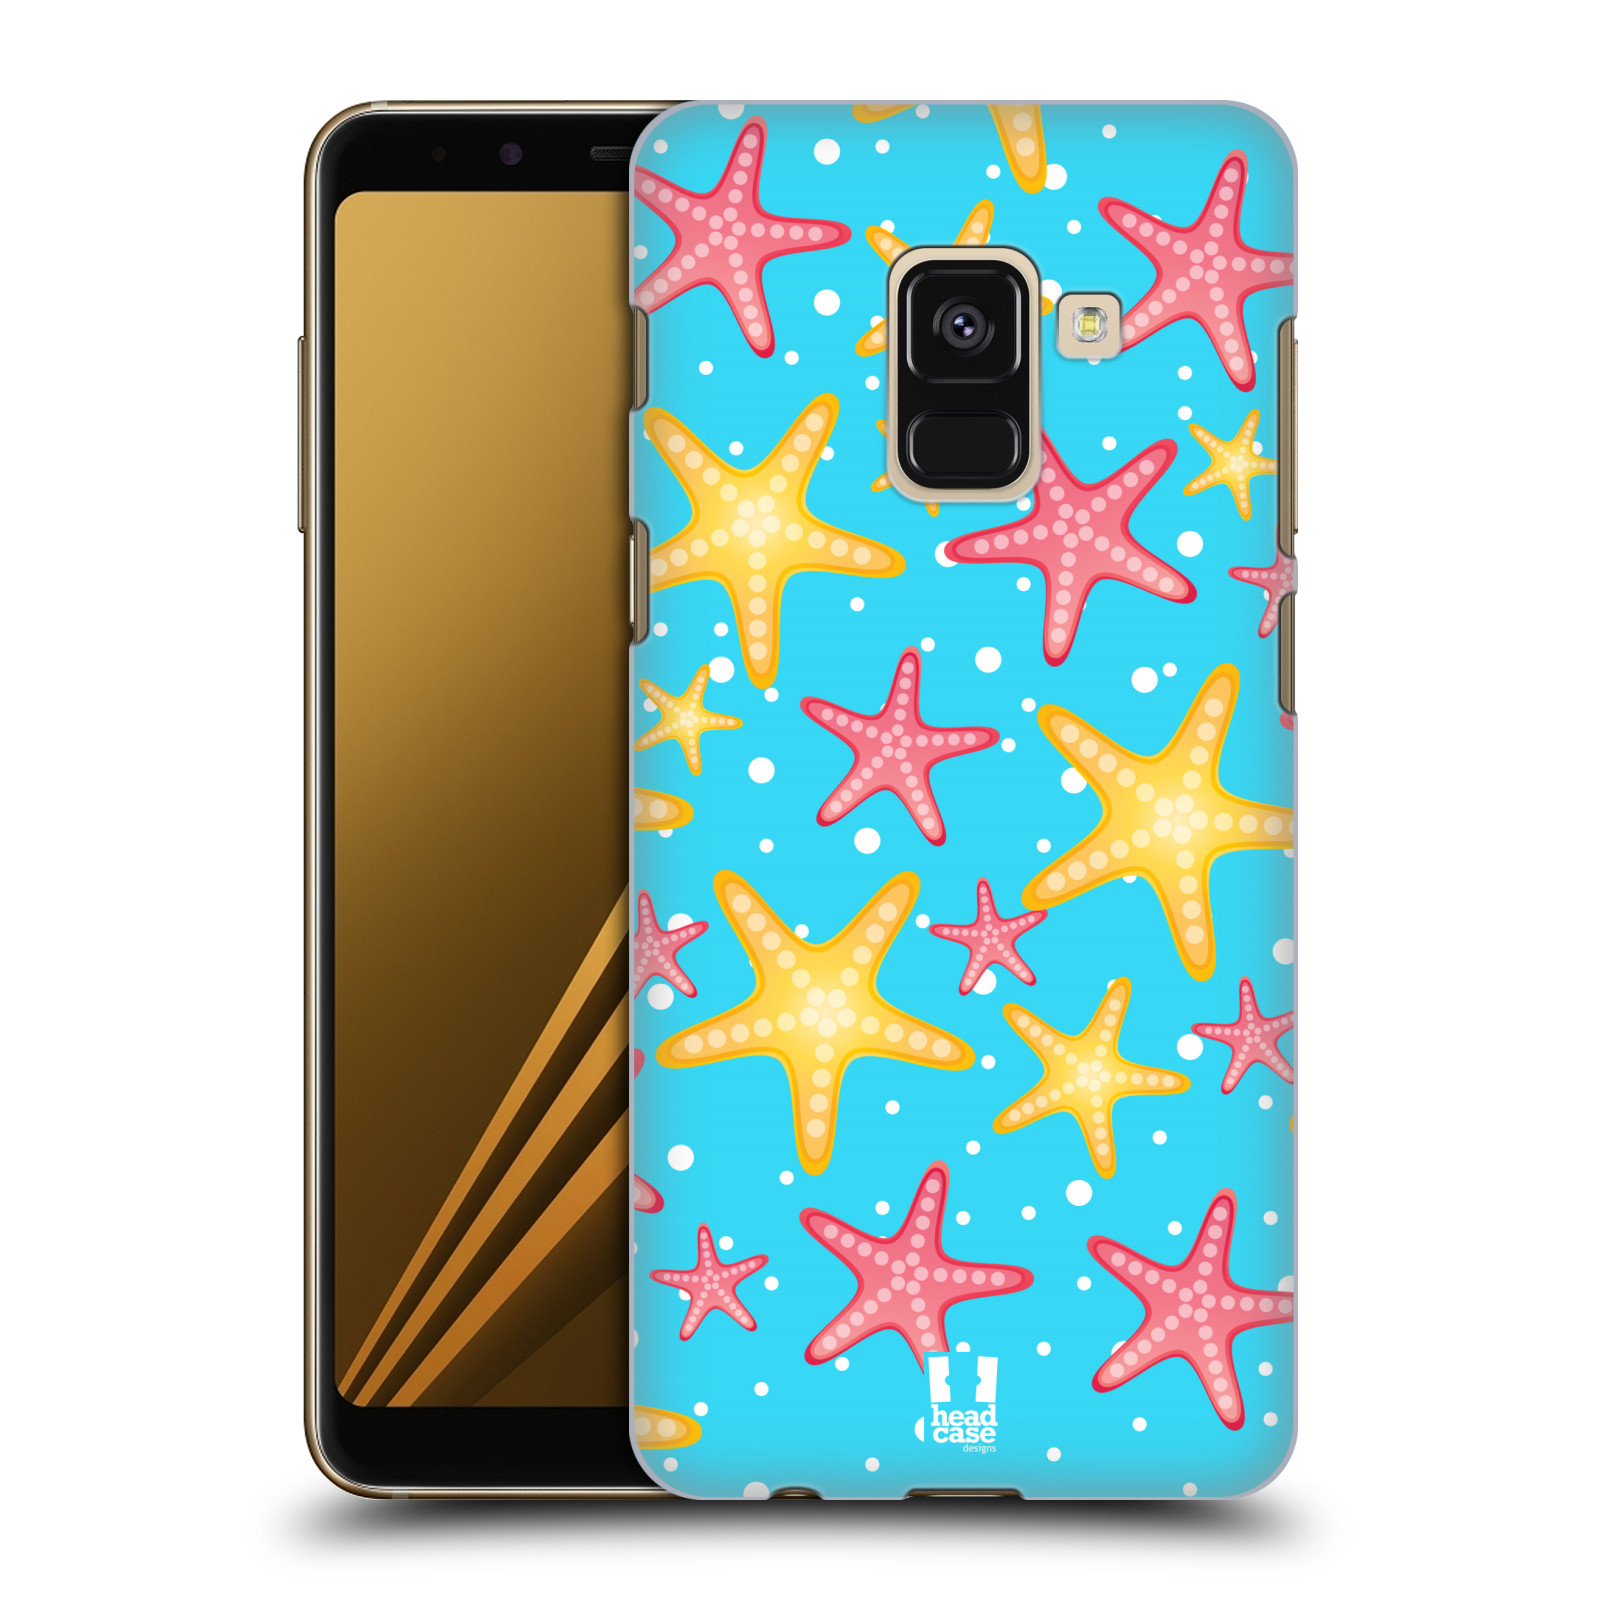 Zadní obal pro mobil Samsung Galaxy A8+ - HEAD CASE - kreslený mořský vzor hvězda